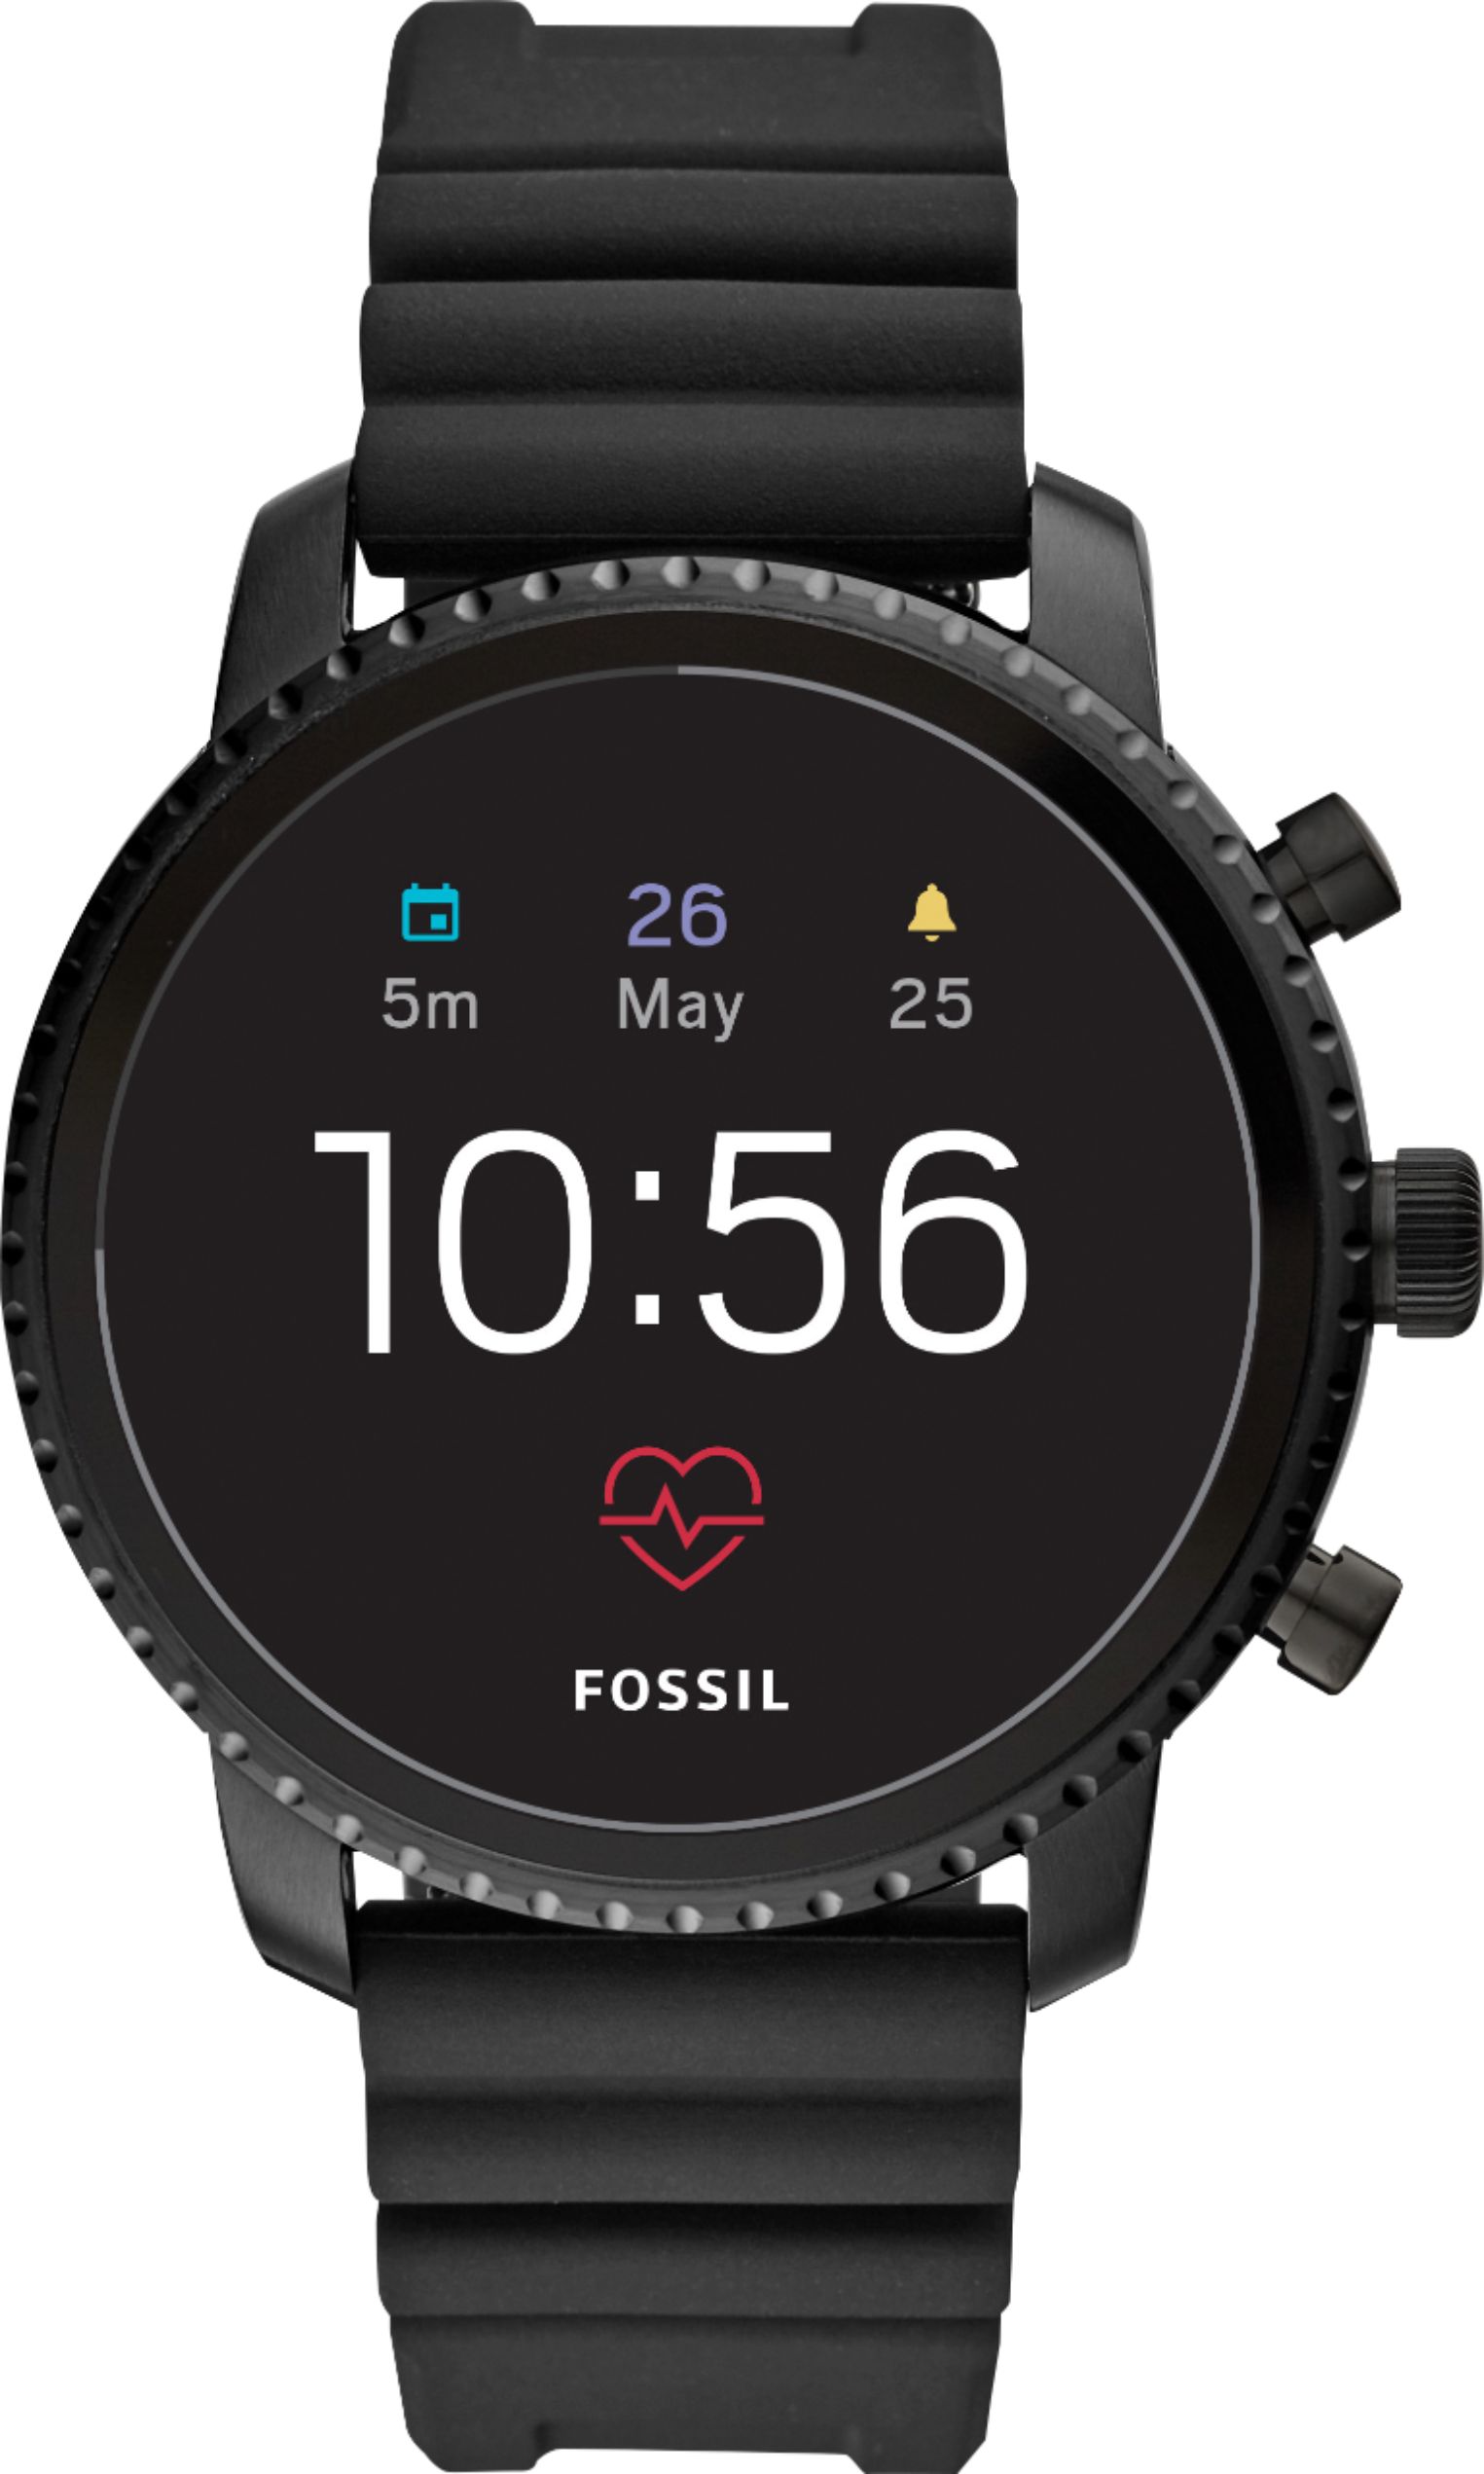 Customer Reviews: Fossil Gen 4 Explorist HR Smartwatch 45mm Stainless ...